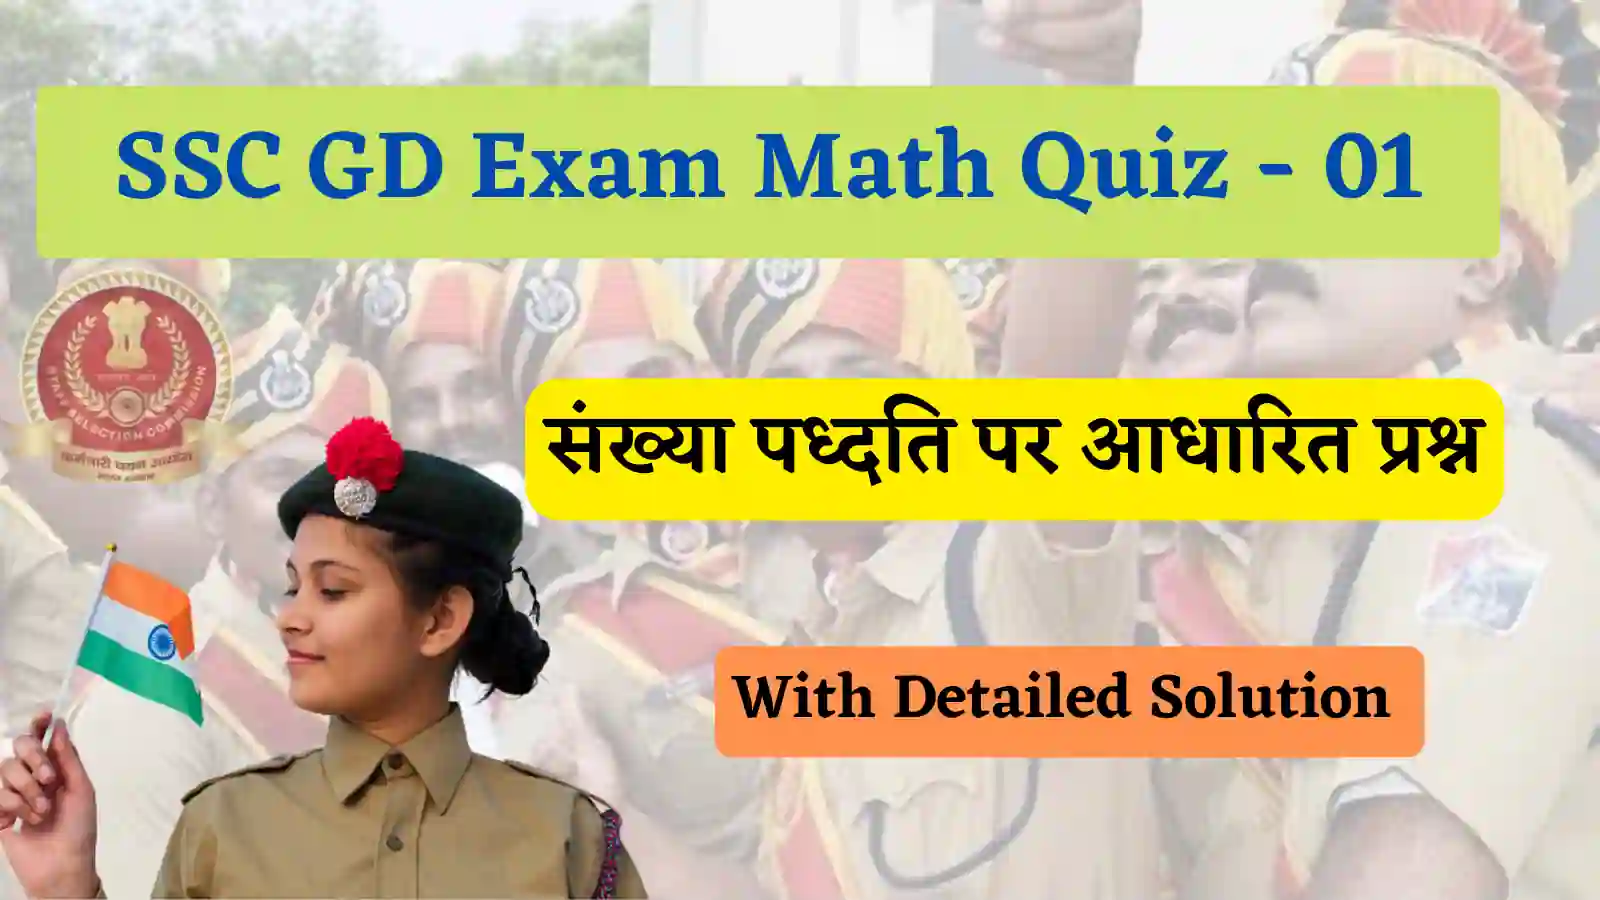 SSC GD Exam Math Quiz - 01